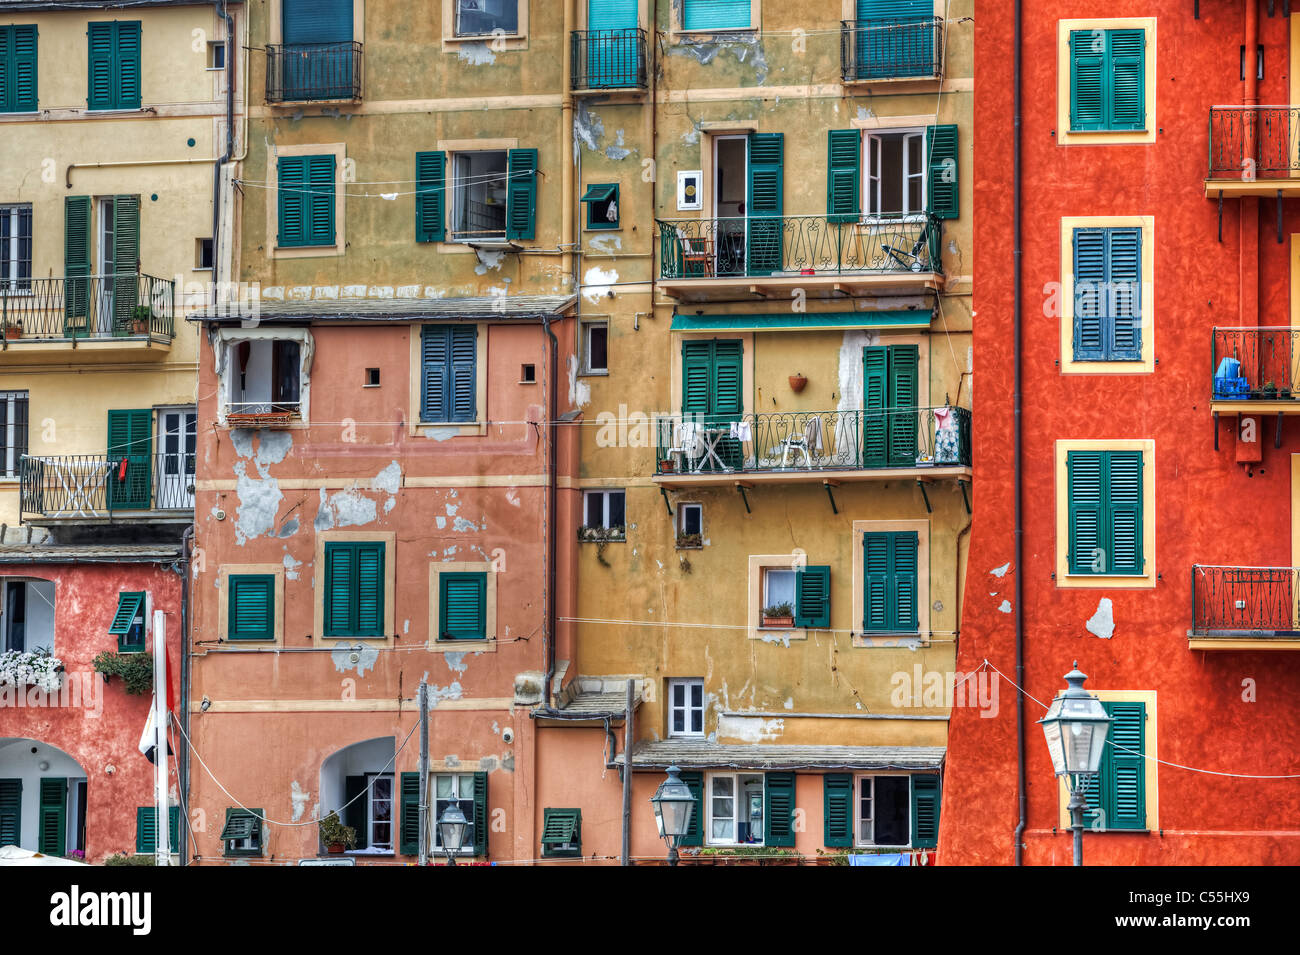 Camogli, eine alte Hafenstadt in Ligurien ist berühmt für seine bunten Häuser mit großen Fenstern Stockfoto